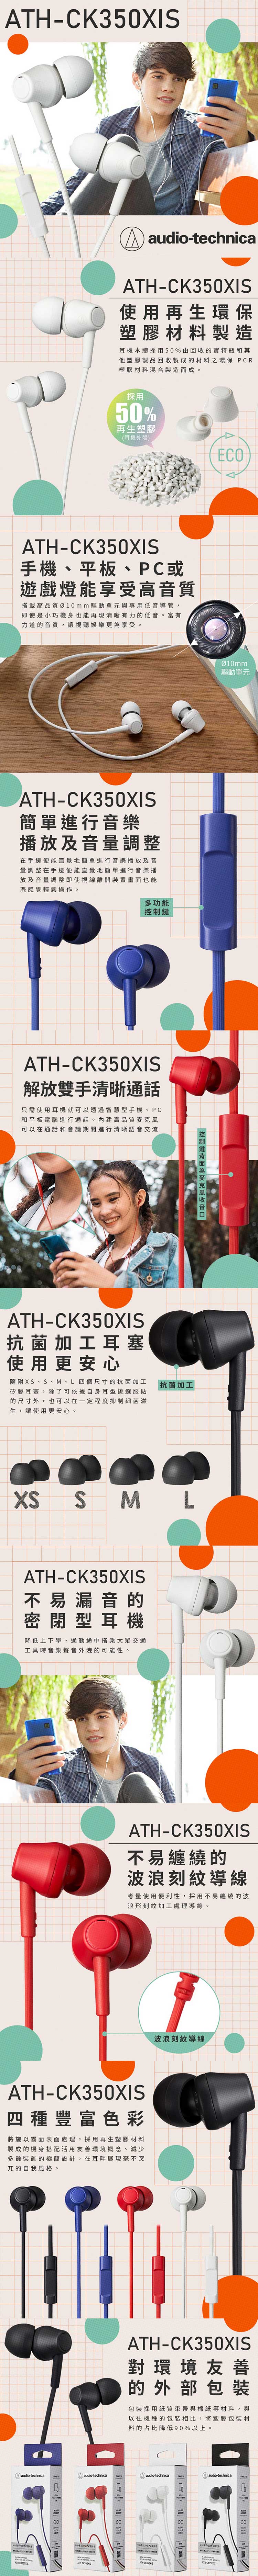 audio-technica-鐵三角-ATH-CK350xis-內.jpg